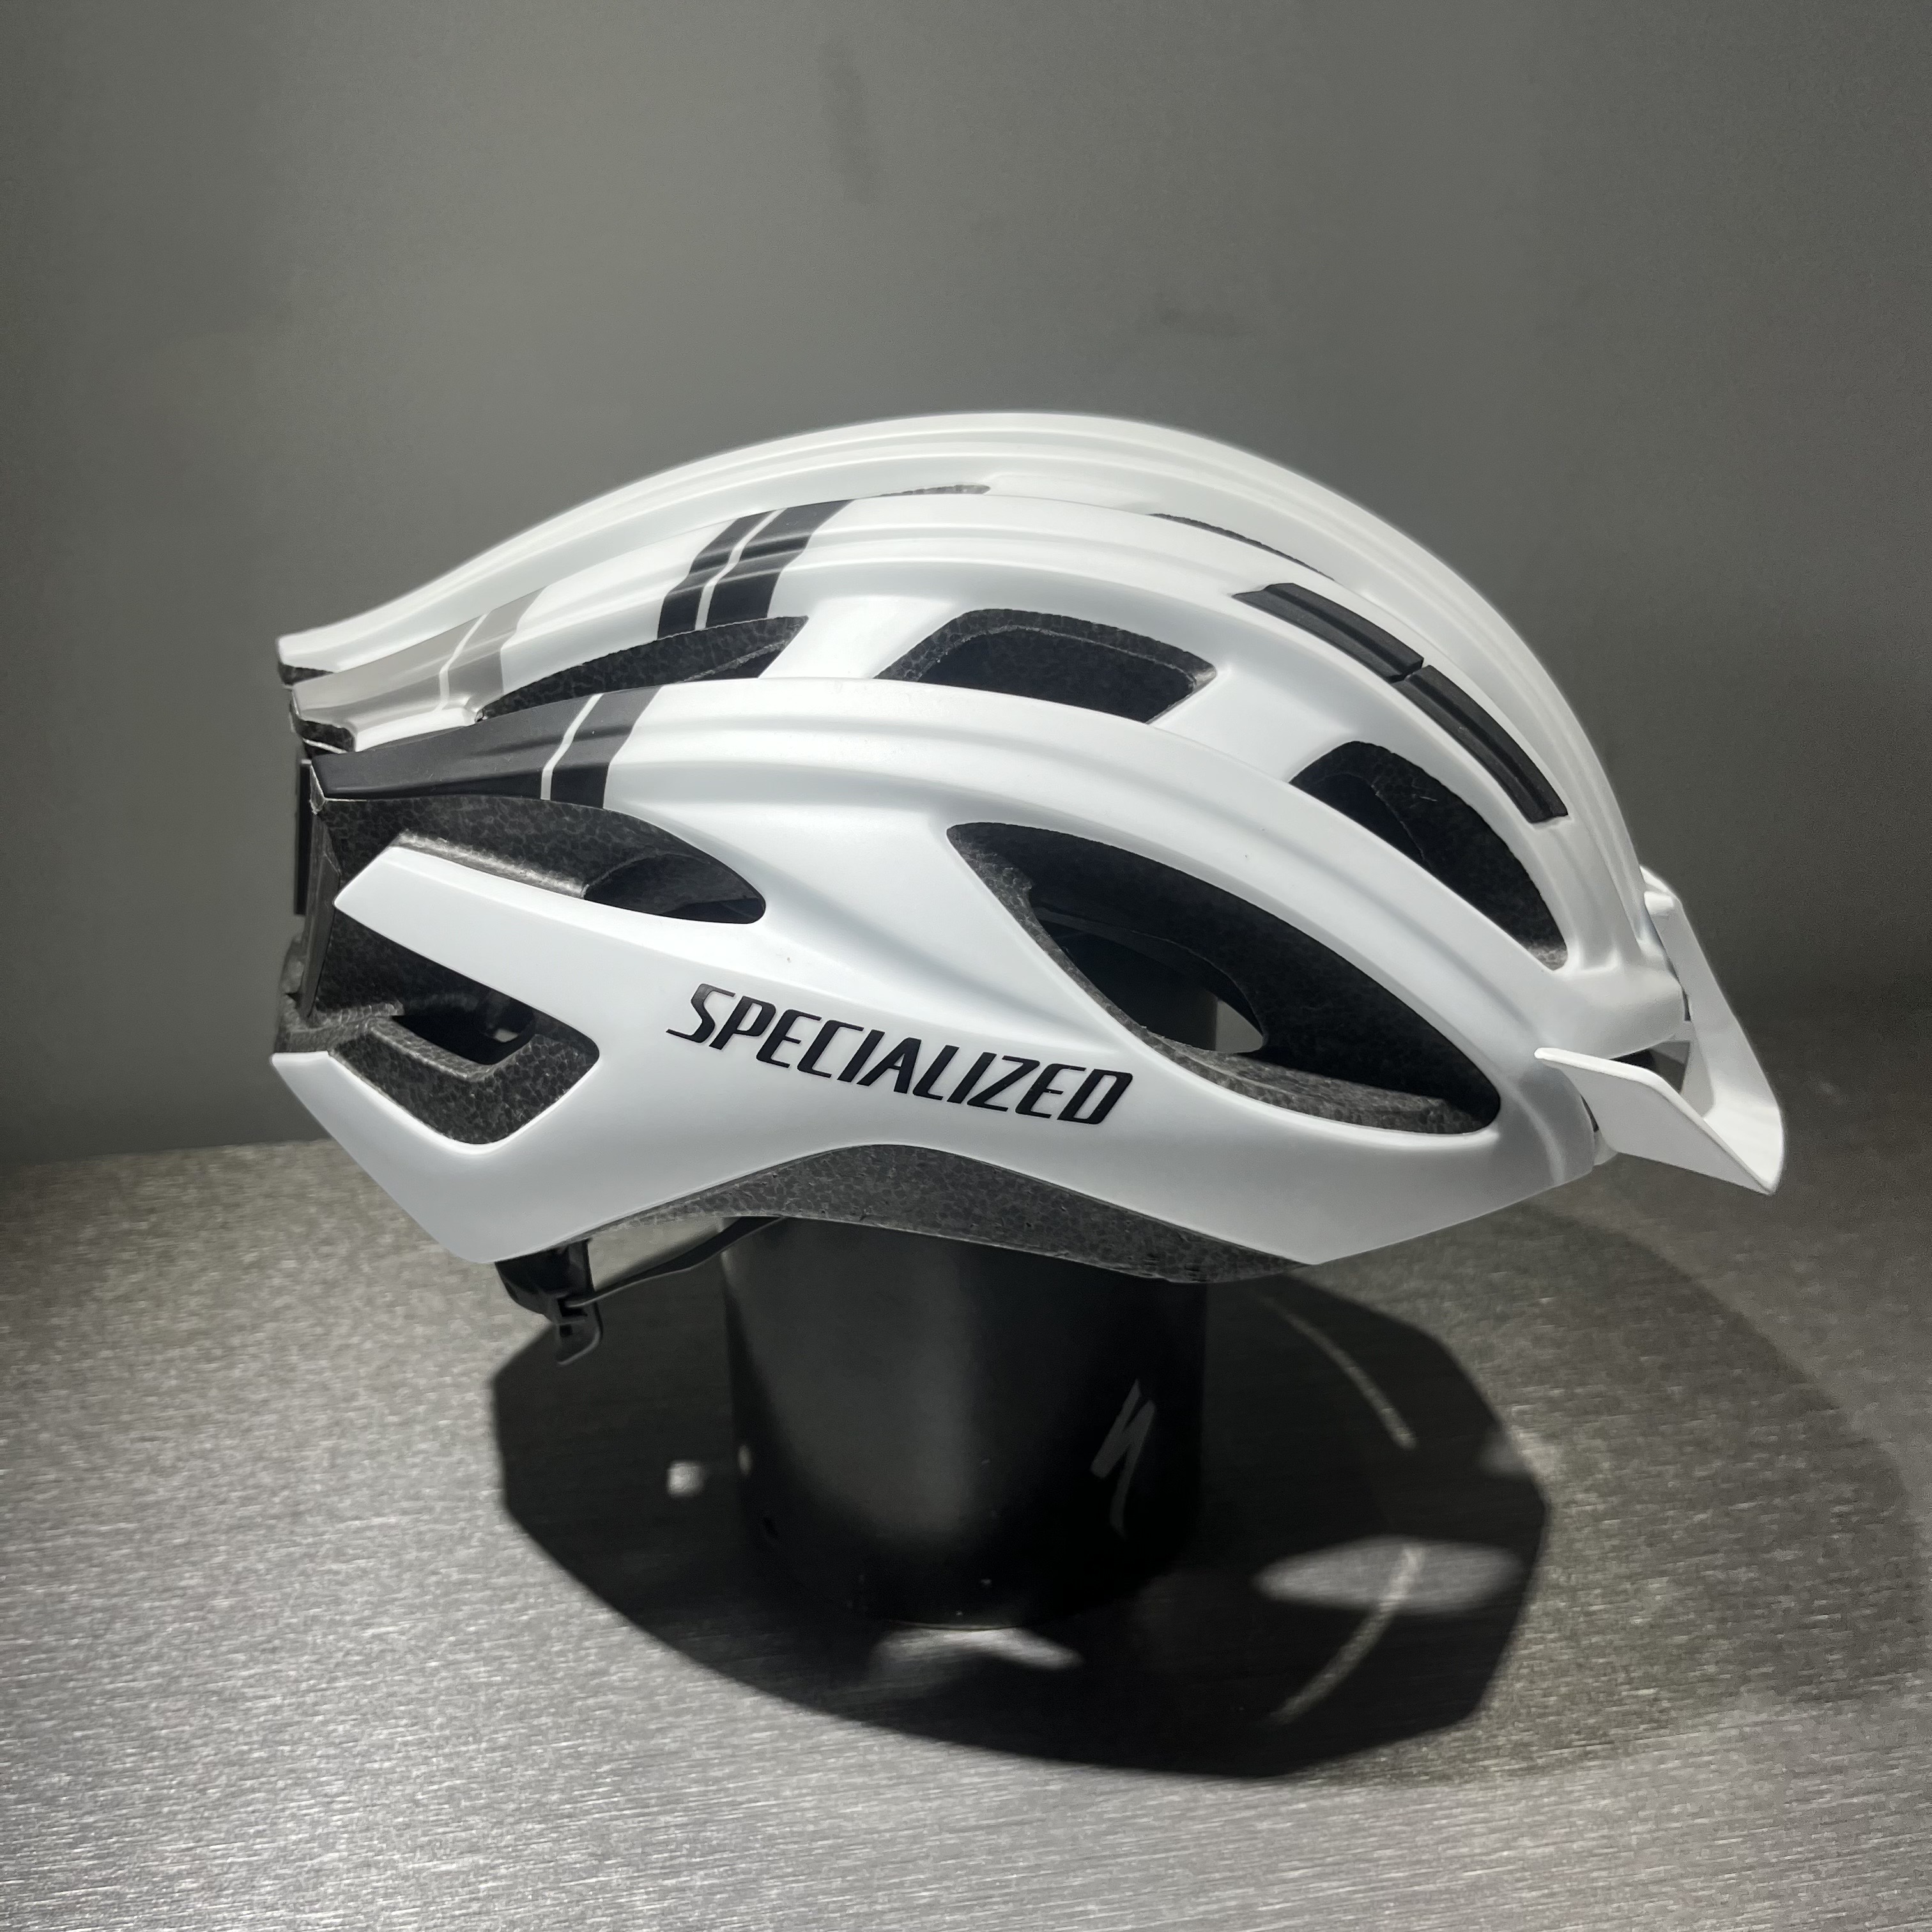 자체브랜드 스페셜라이즈드 연식할인 자전거 헬멧 판매 모음전 (에스웍스 프리베일, 에어넷, 프로페로)